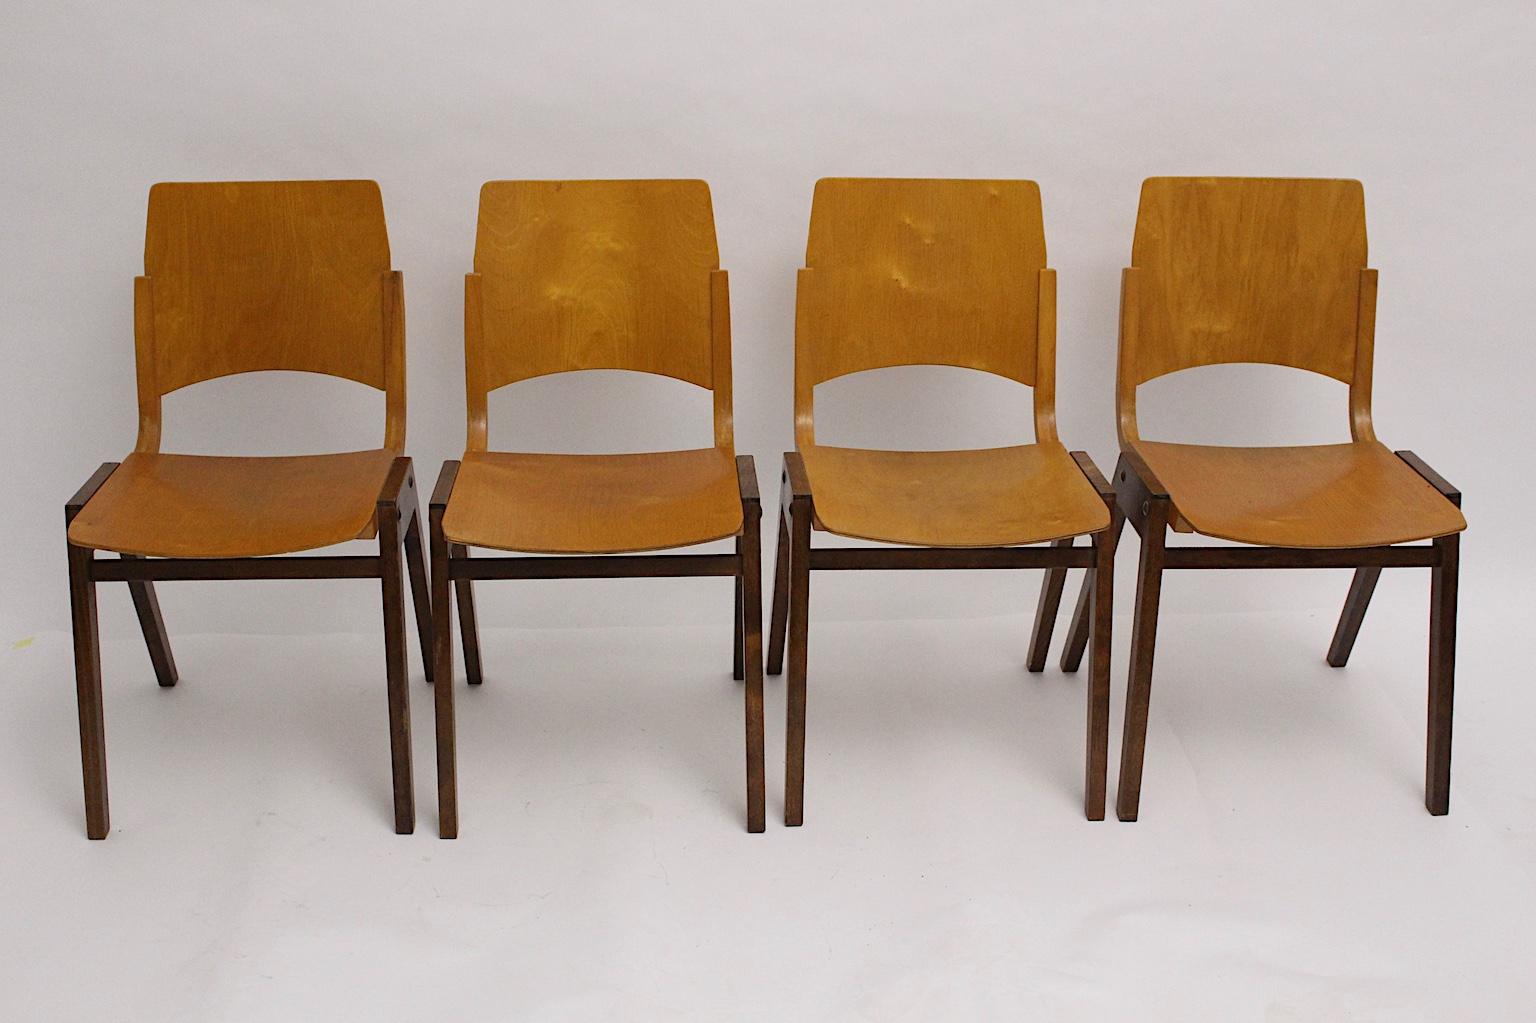 Mid Century Modern Satz von 4 bicolor Esszimmerstühlen aus Buche Modell P 7 von Roland Rainer entworfen für die Wiener Stadthalle 1952. Die Esszimmerstühle sind auch stapelbar. Ausgeführt von Emil und Alfred Pollak.
Darüber hinaus bestehen die